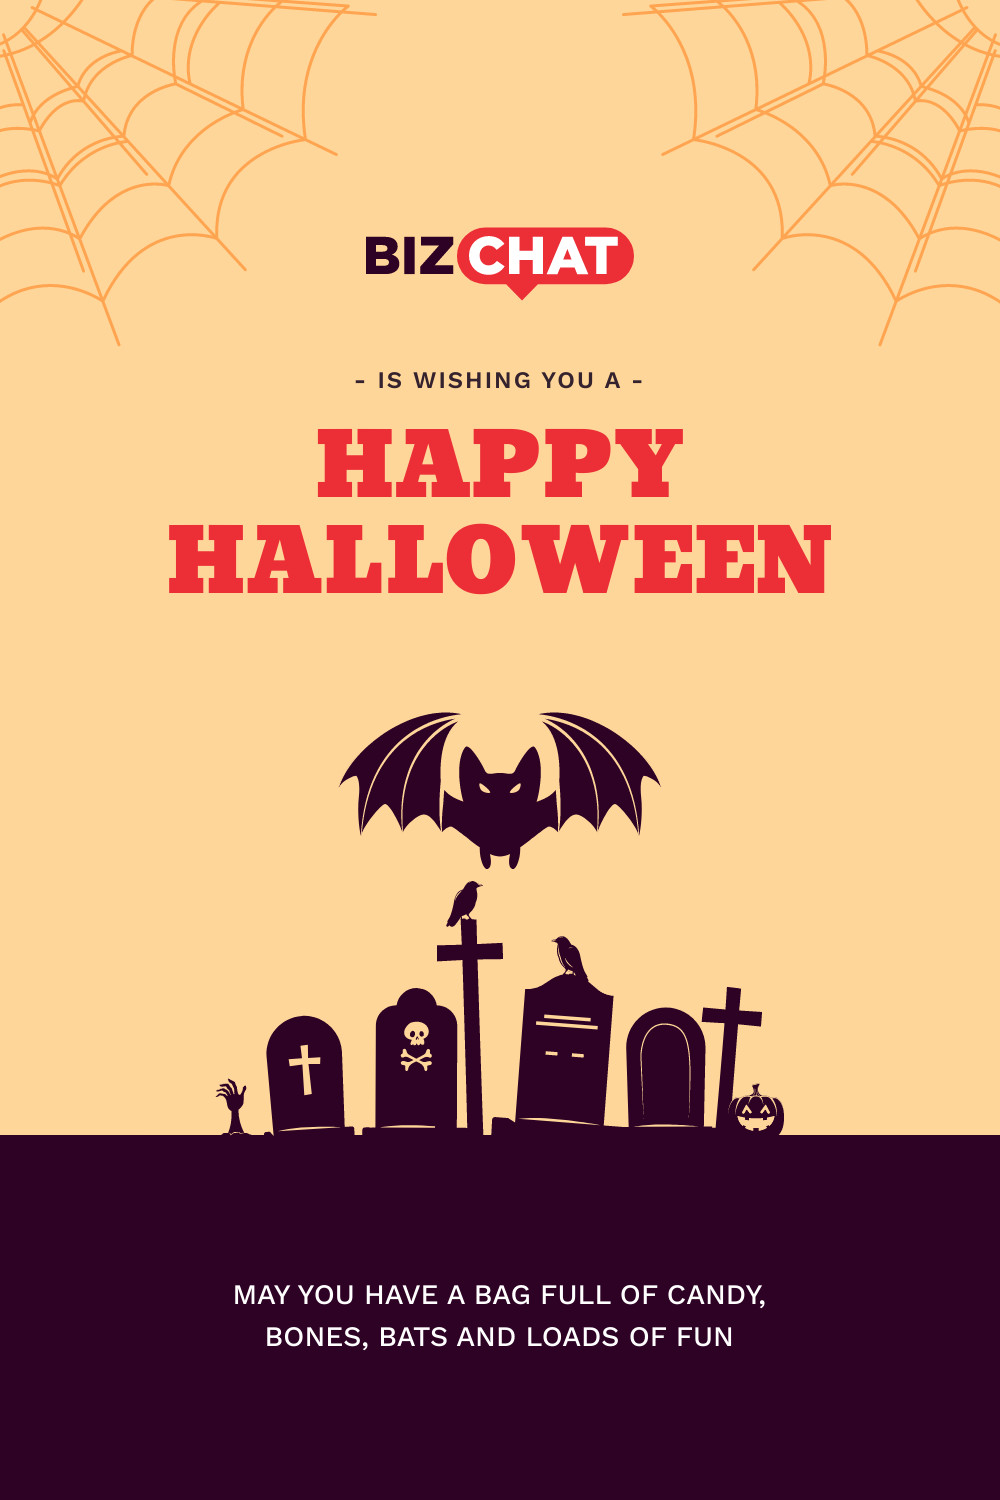 BizChat Wishing Happy Halloween  Facebook Cover 820x360